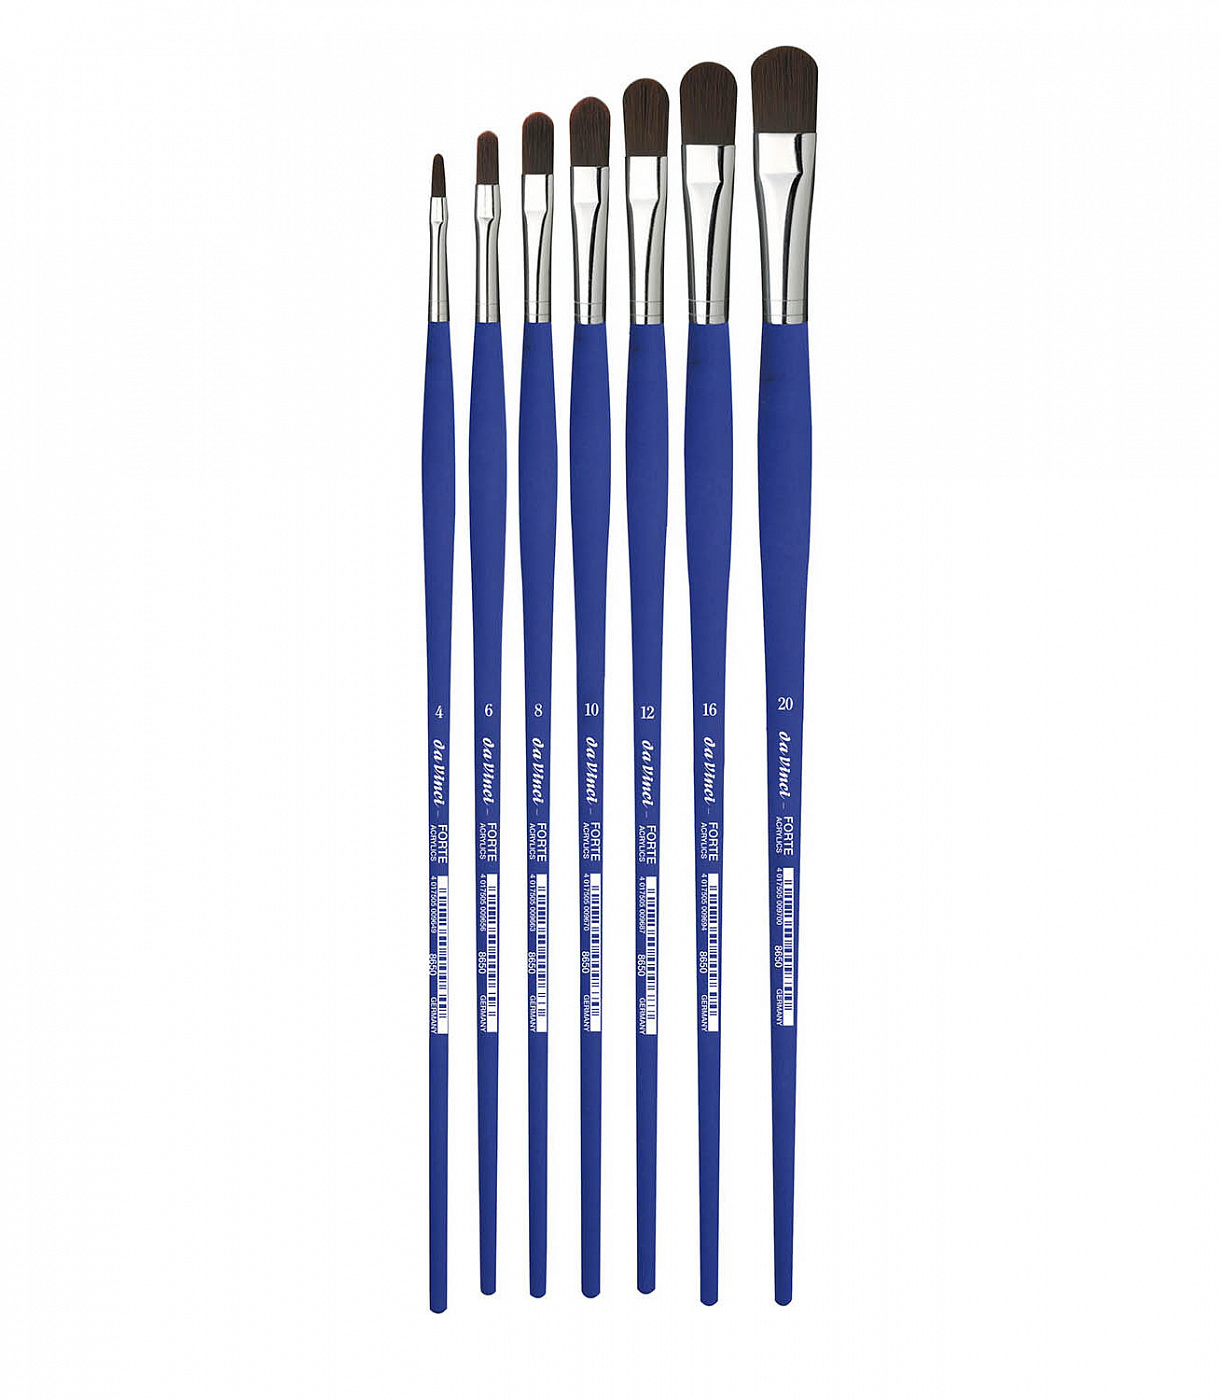 Кисть синтетика овальная Da Vinci 8650 Forte Acrylics длинная ручка DV-8650-20 - фото 1